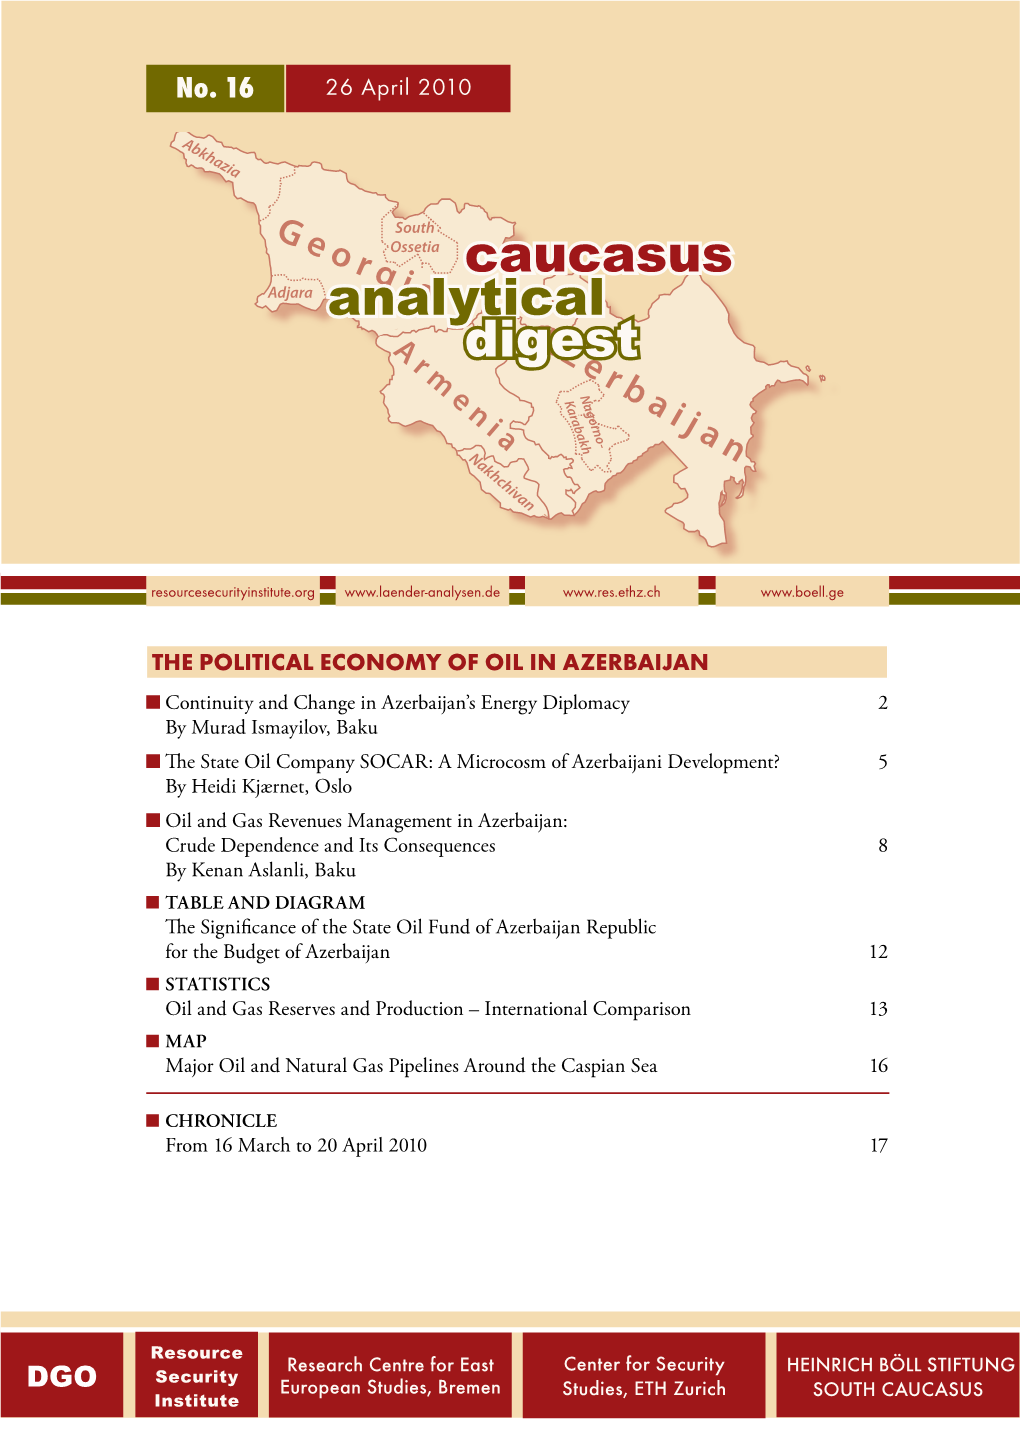 No. 16: the Political Economy of Oil in Azerbaijan